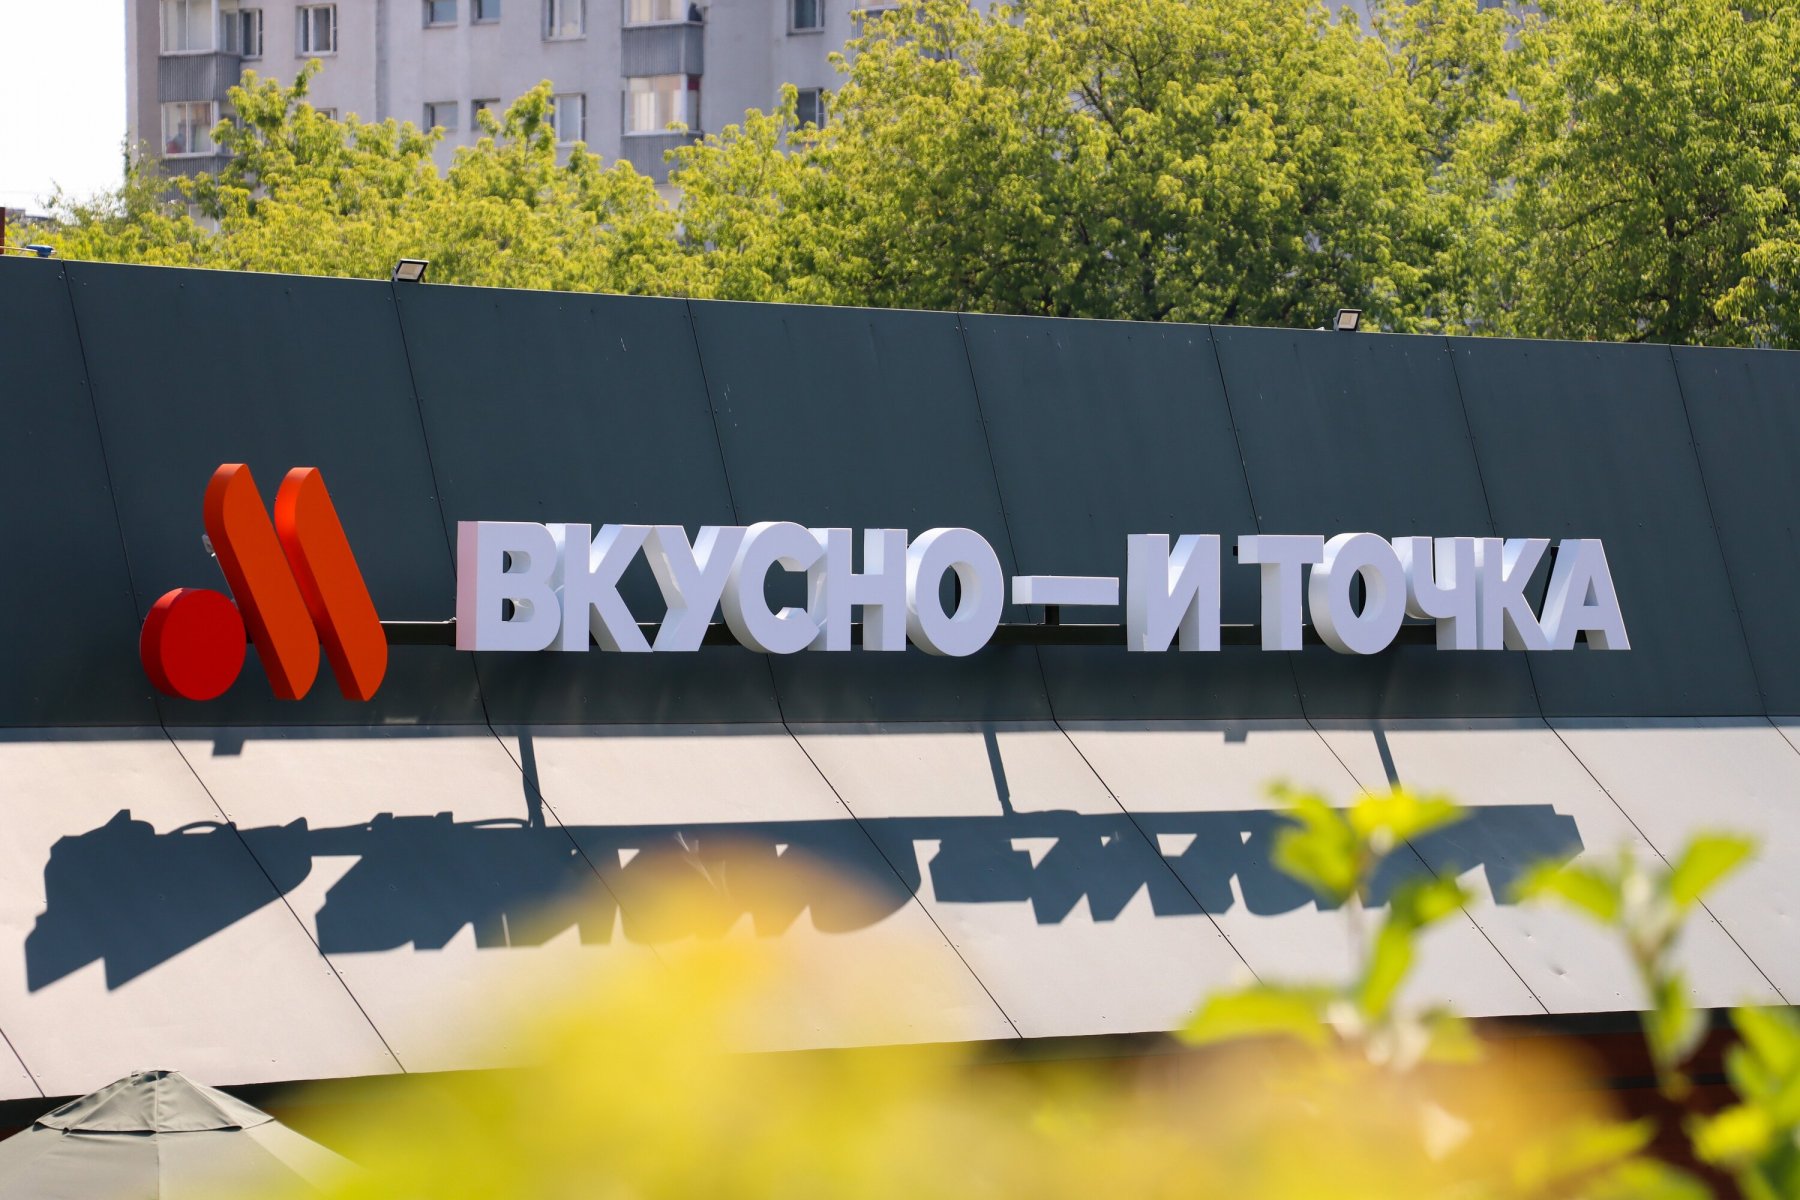 «Мощный файт»: в Москве подрались на работе два сотрудника «Вкусно - и точка»